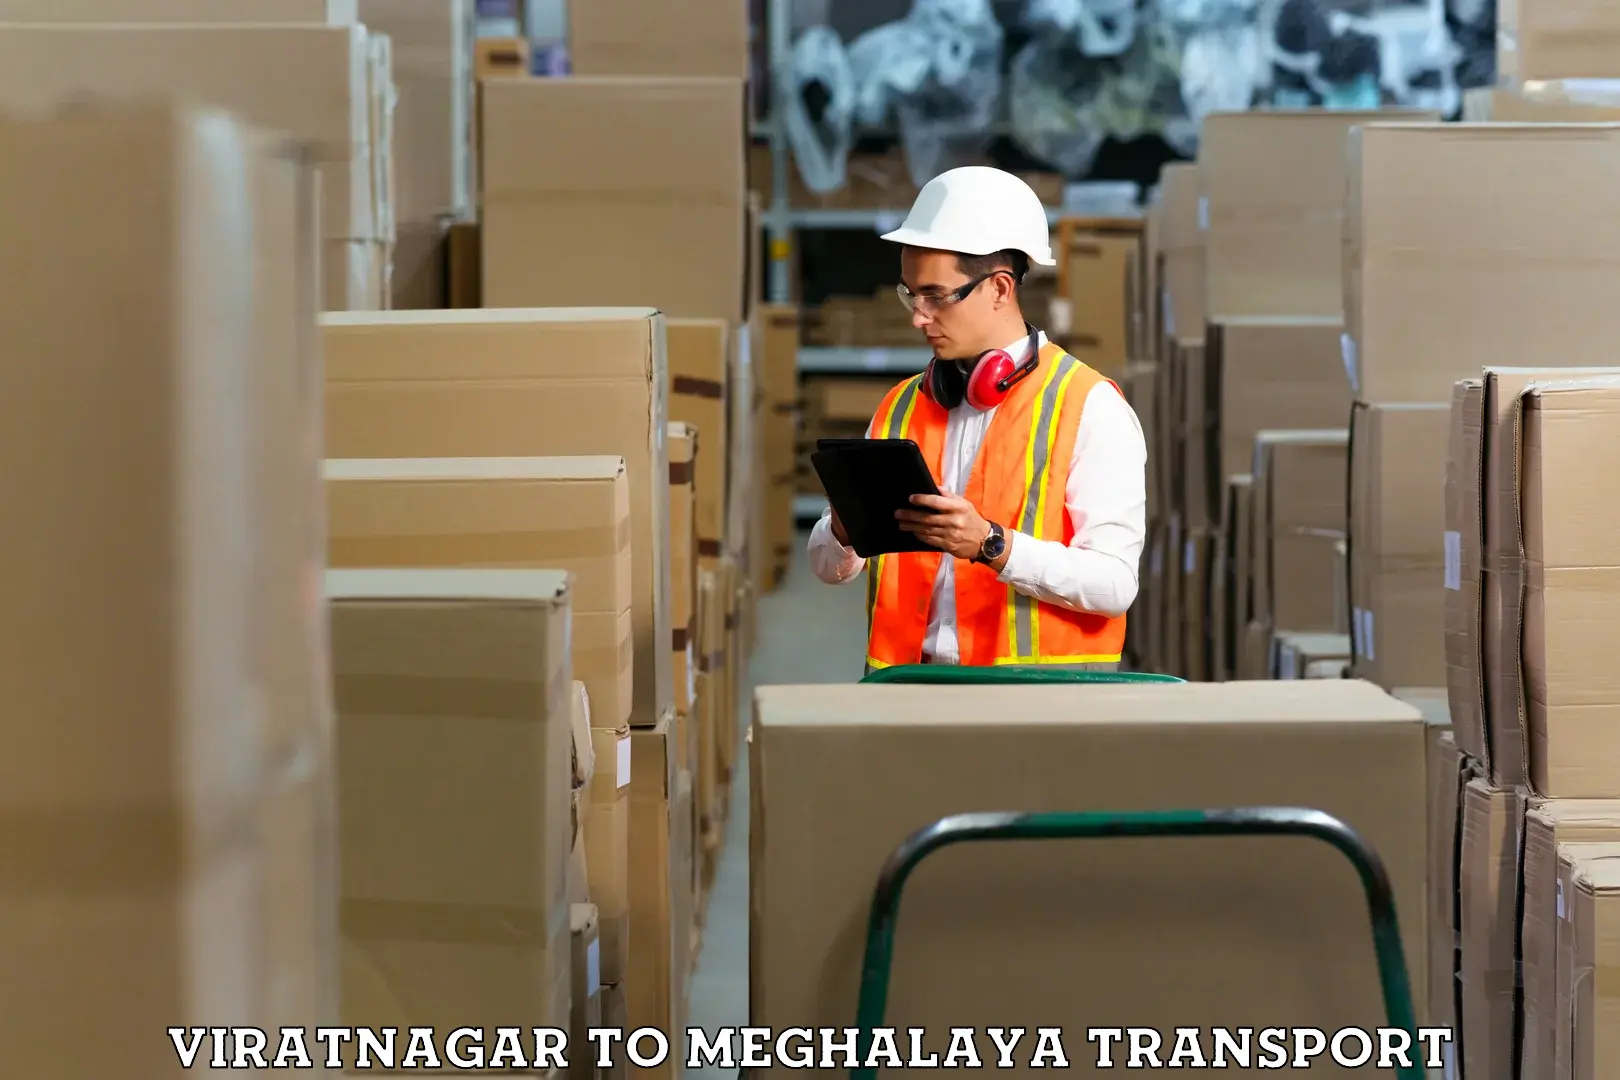 Cargo transportation services Viratnagar to Shillong